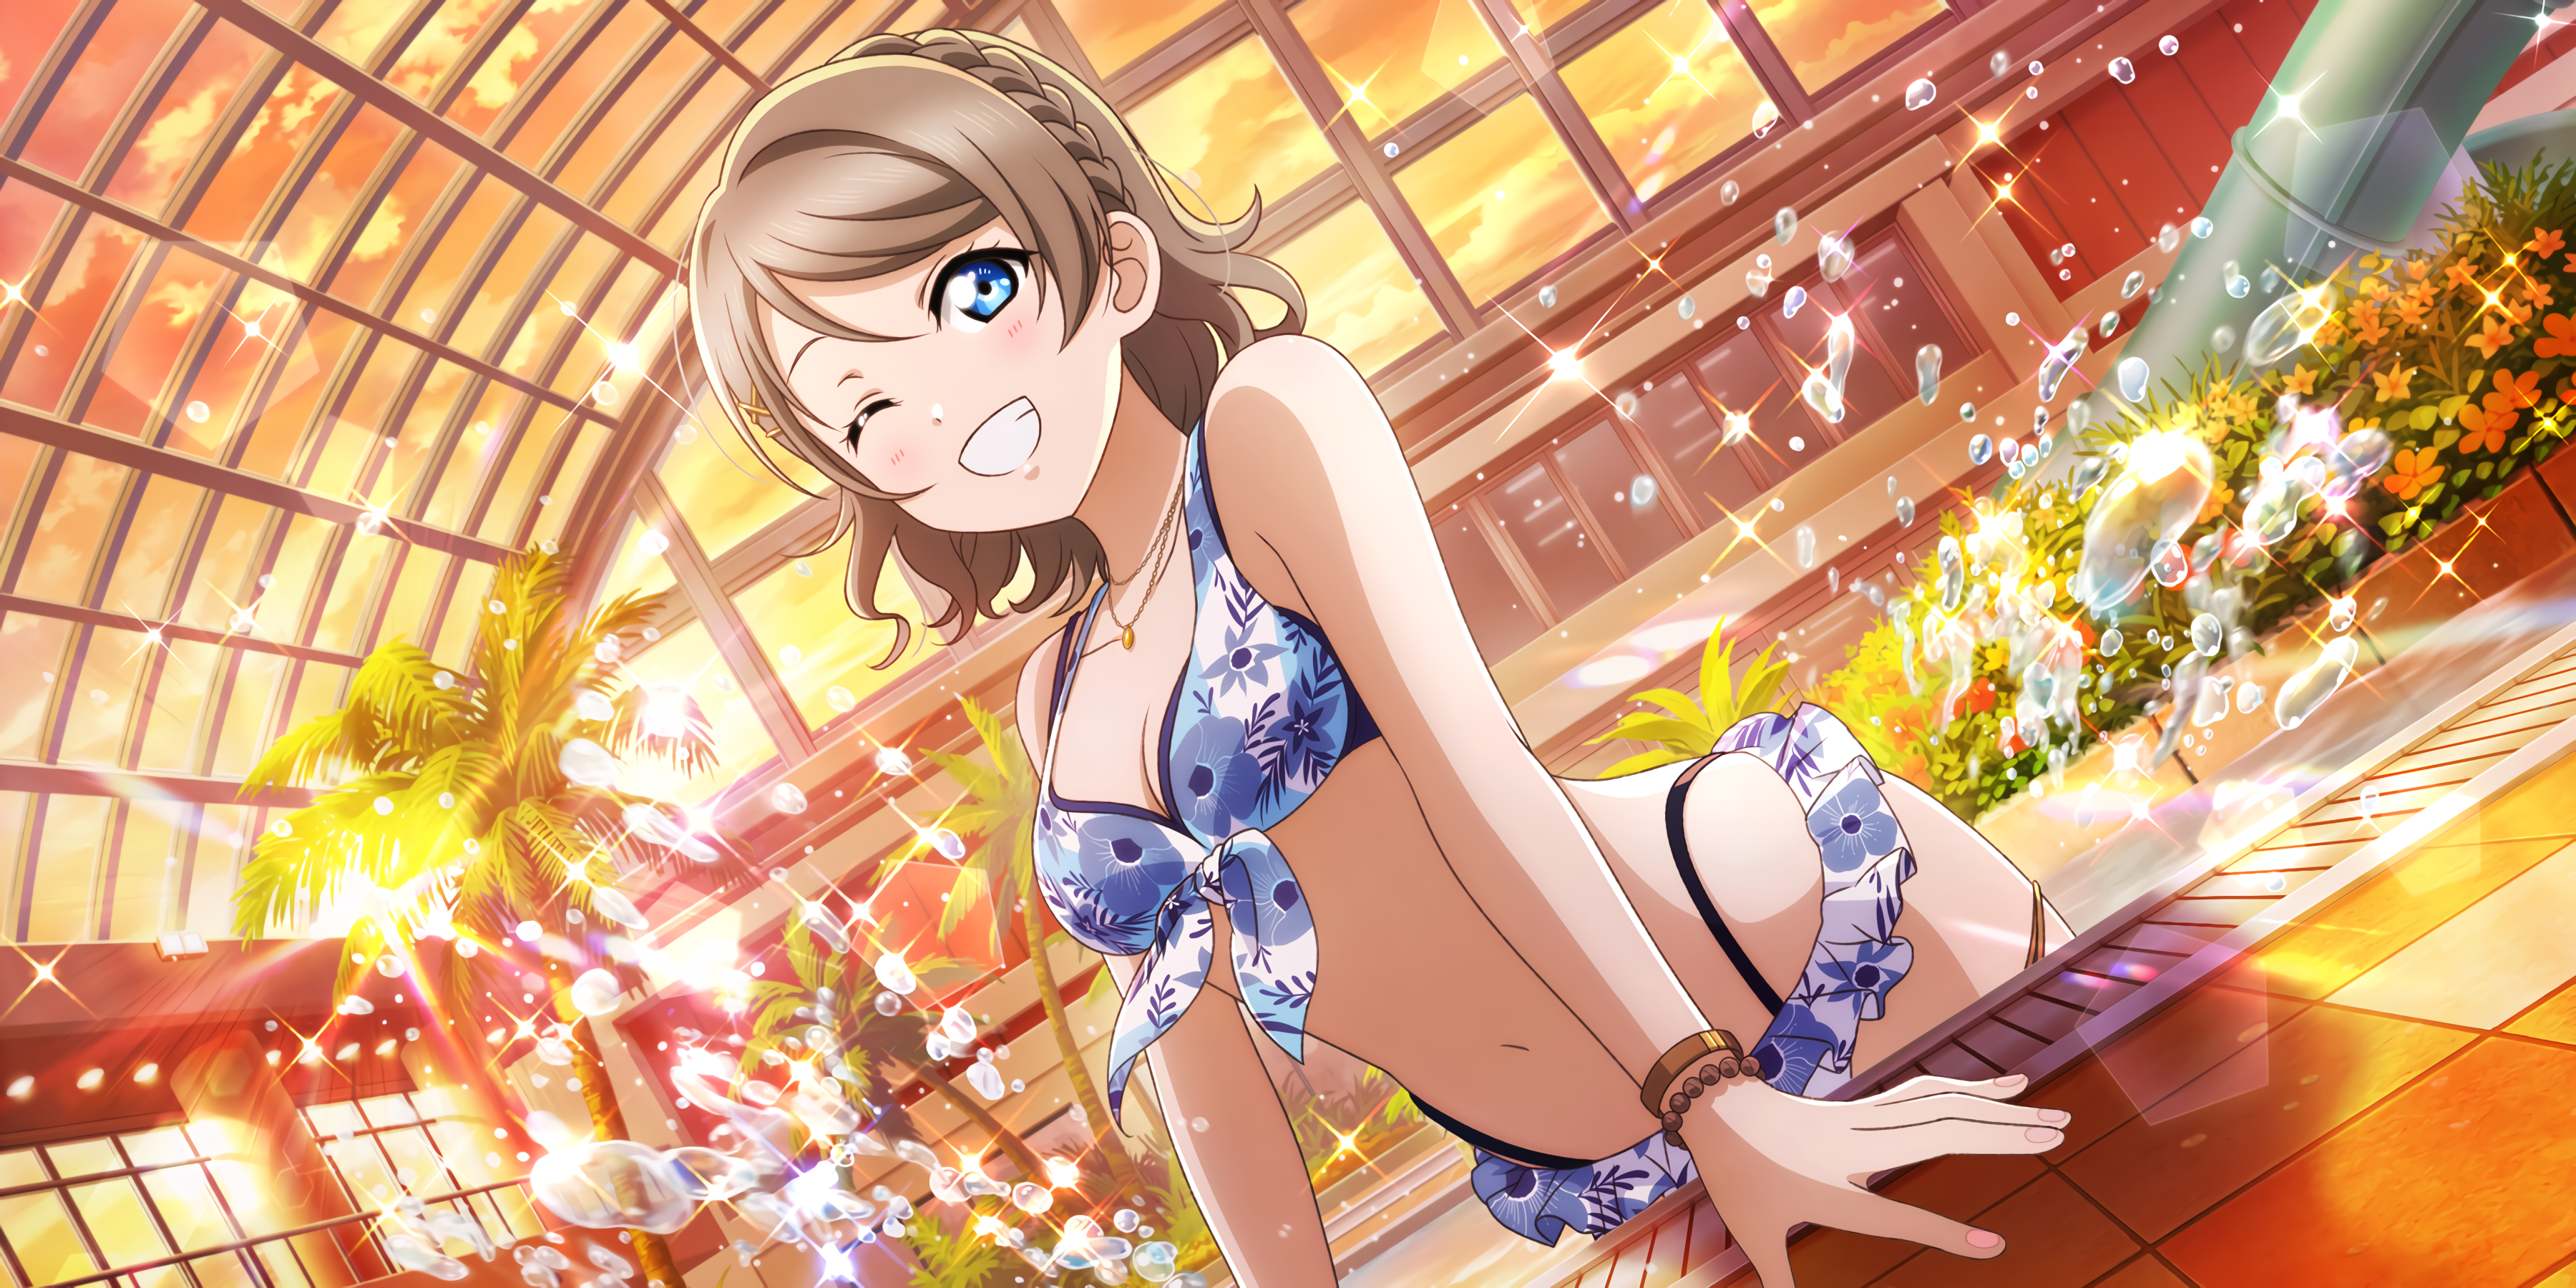 Anime 3600x1800 Watanabe You Love Live! Sunshine anime girls bikini